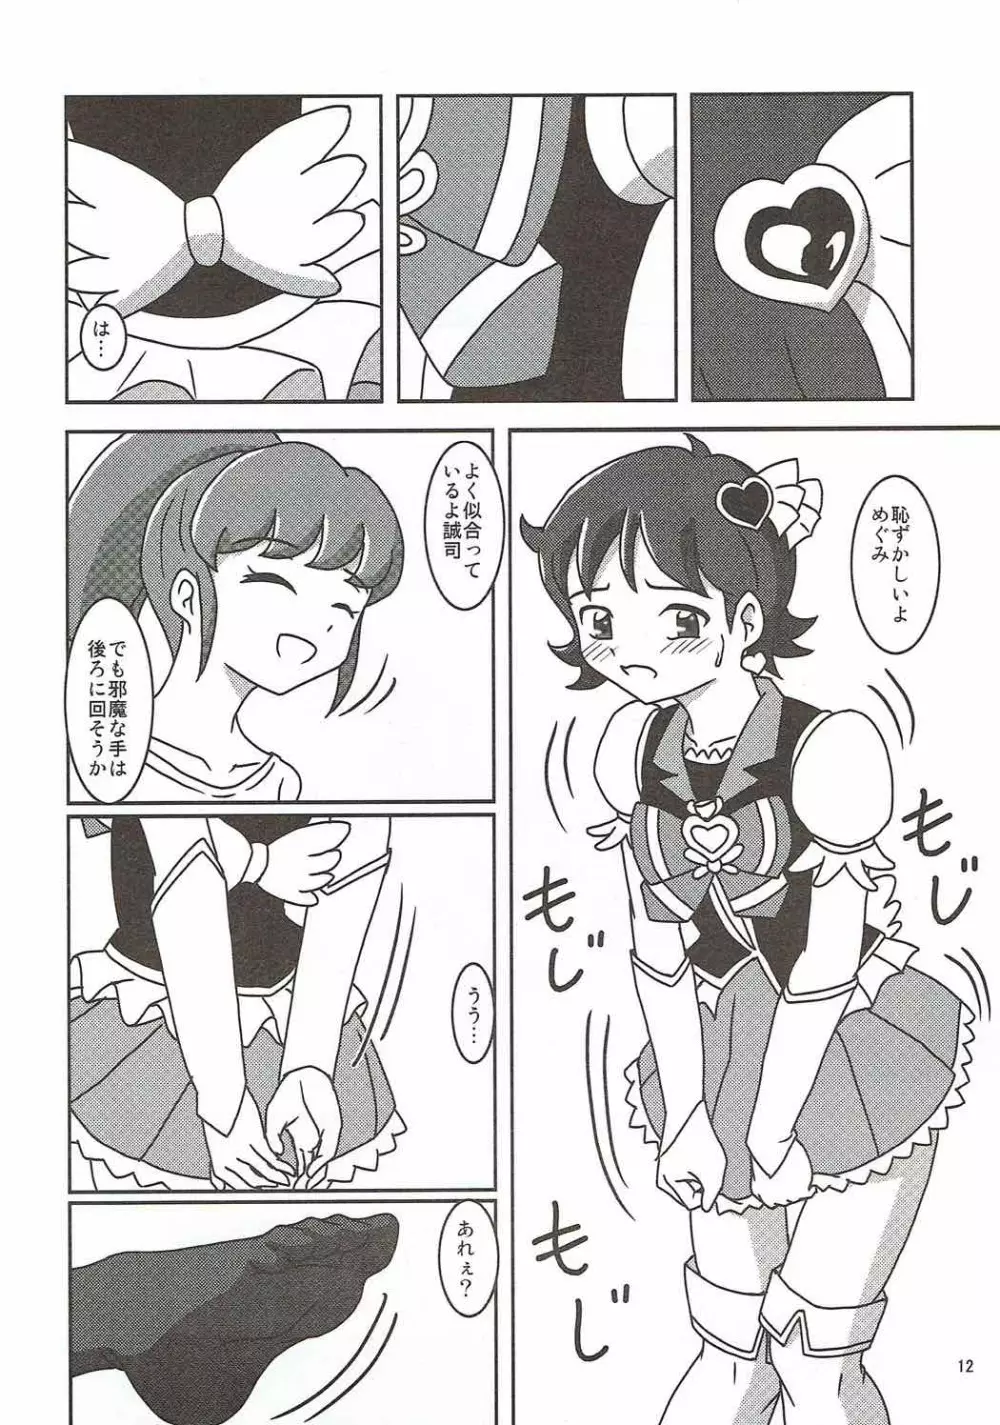 ハピネスチャージズリキュア!2 - page13